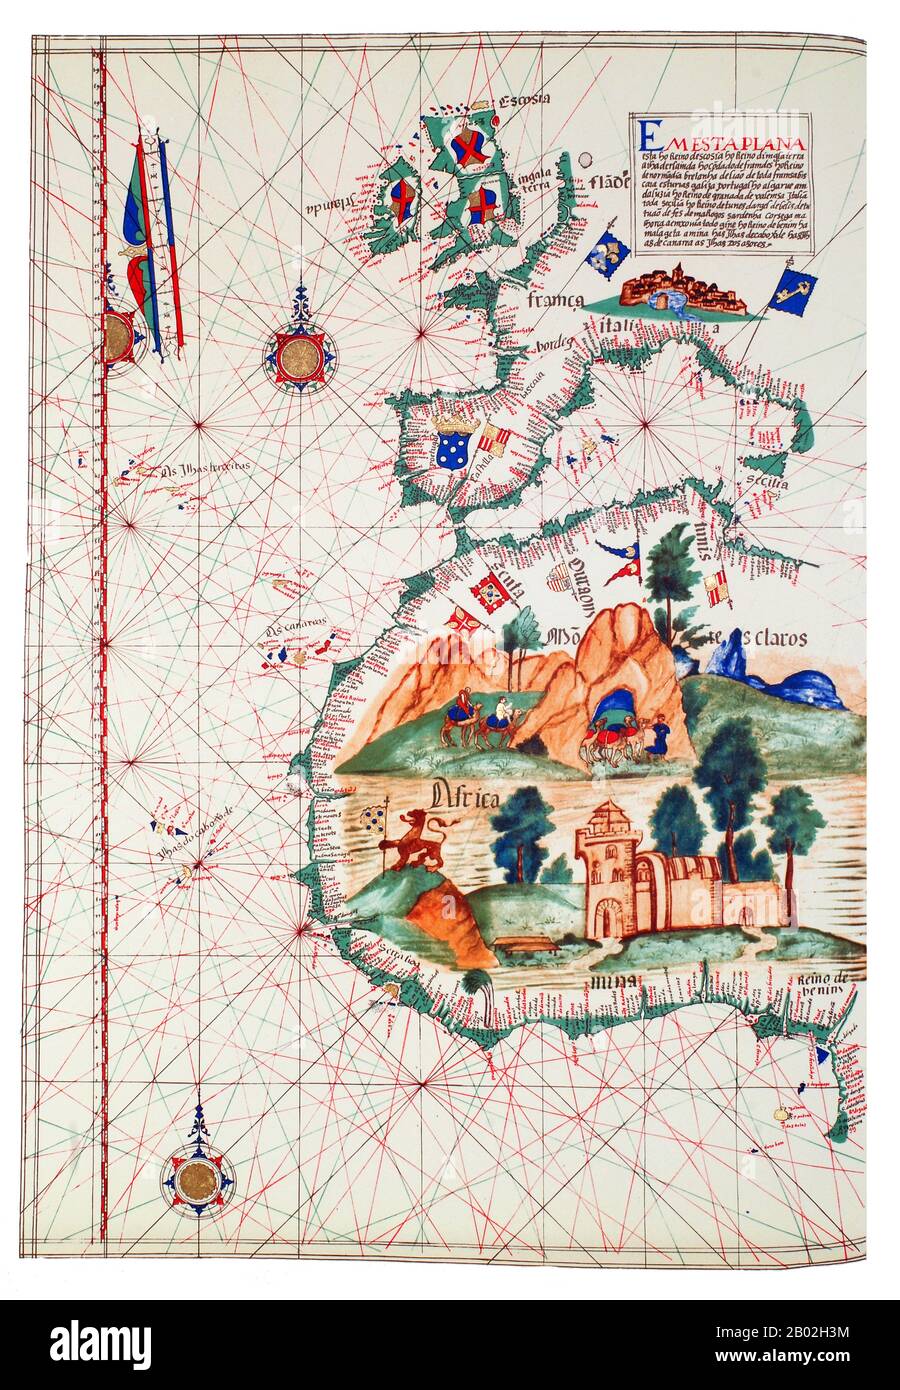 Der portugiesische Entdecker Prinz Henry, bekannt als Navigator, war der erste Europäer, der Afrika und die ozeanische Route zu den Indies methodisch erkundet hat. Von seinem Wohnsitz in der Algarve-Region im Süden Portugals aus leitete er aufeinanderfolgende Expeditionen, um Afrika zu umgehen und Indien zu erreichen. 1420 schickte Henry eine Expedition zur Sicherung der unbewohnten, aber strategischen Insel Madeira. 1425 versuchte er, auch die Kanarischen Inseln zu sichern, doch diese unterstanden bereits einer festen kastilischen Kontrolle. 1431 erreichte und annektierte eine weitere portugiesische Expedition die Azoren. Stockfoto